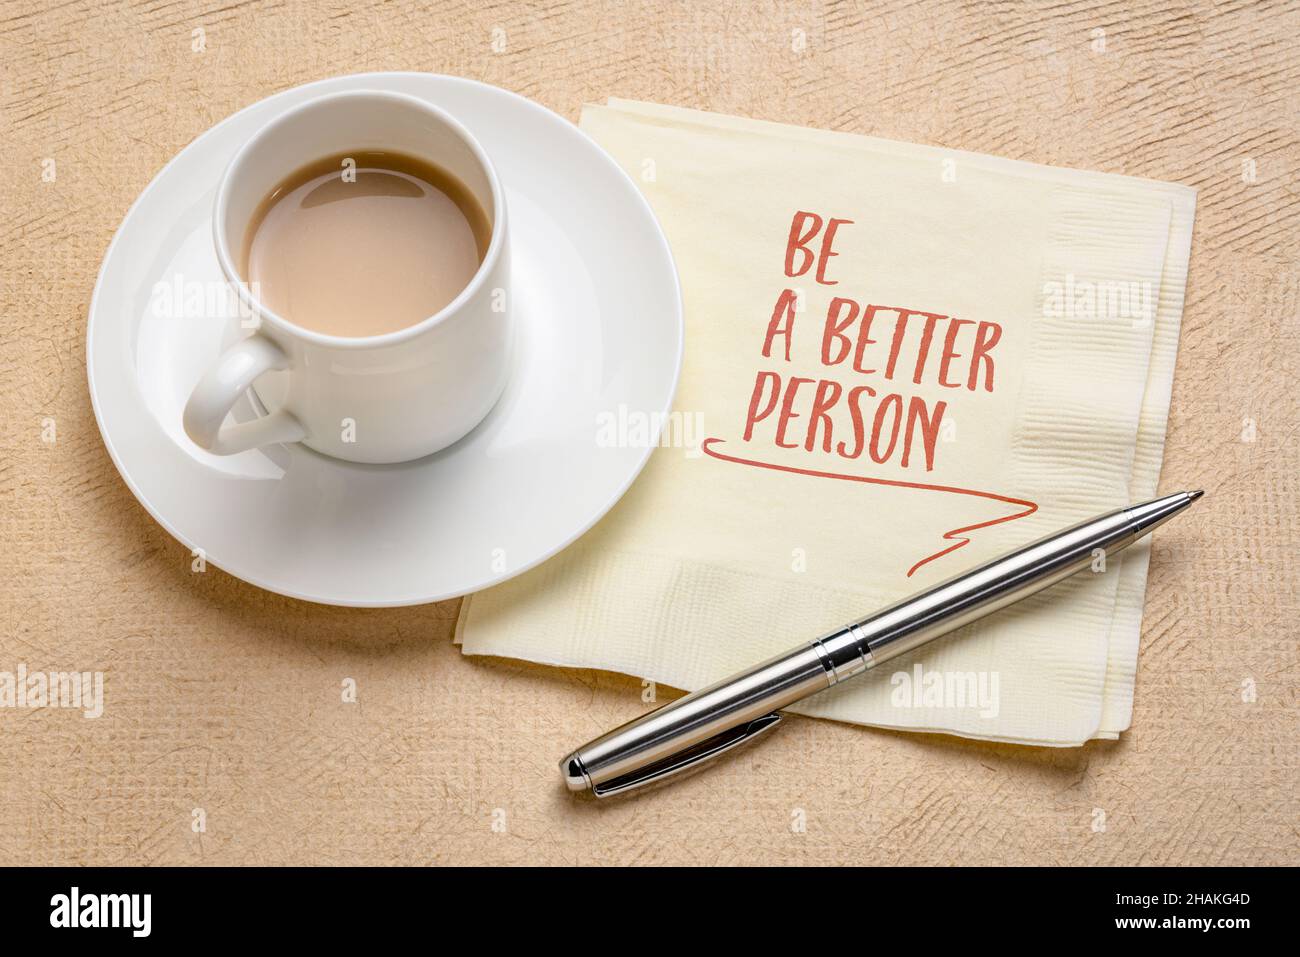 Seien Sie ein besserer Mensch inspirierende Erinnerung - Handschrift auf einer Serviette mit einer Tasse Kaffee, Selbstverbesserung und persönliches Entwicklungskonzept Stockfoto